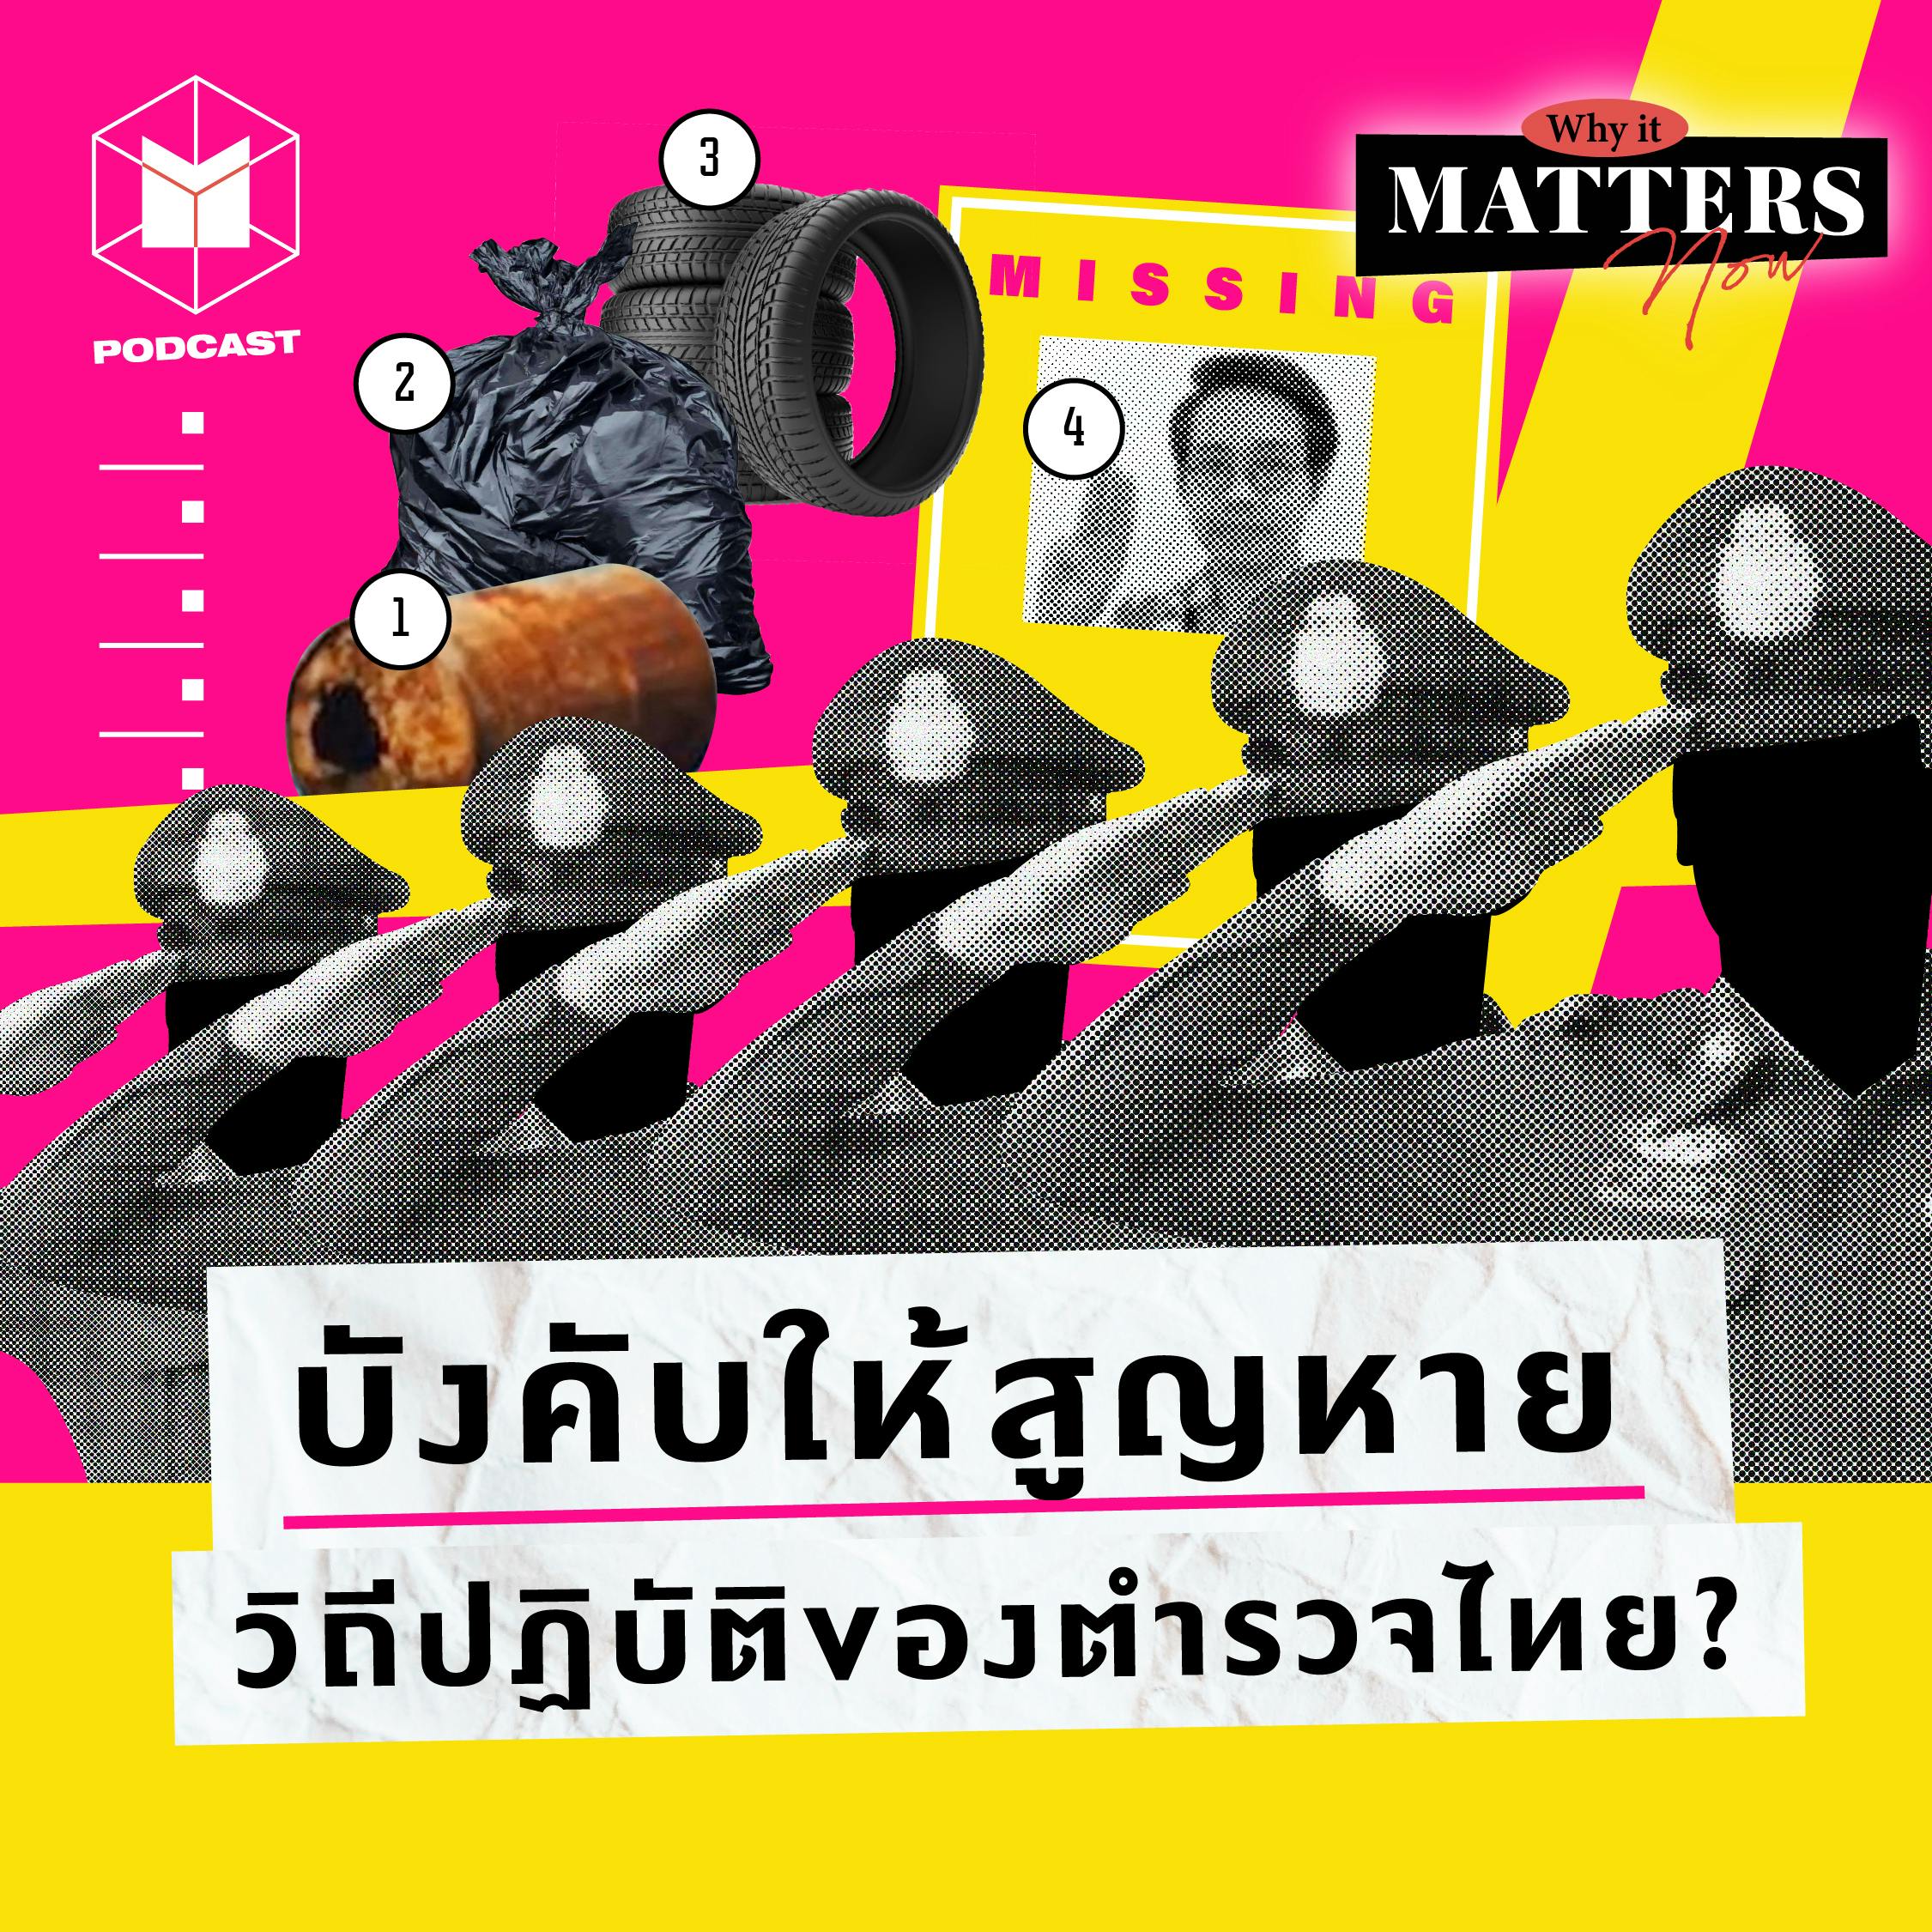 ซ้อมทรมาน-อุ้มหาย วิถีของตำรวจไทย? | Why It MATTERs NOW